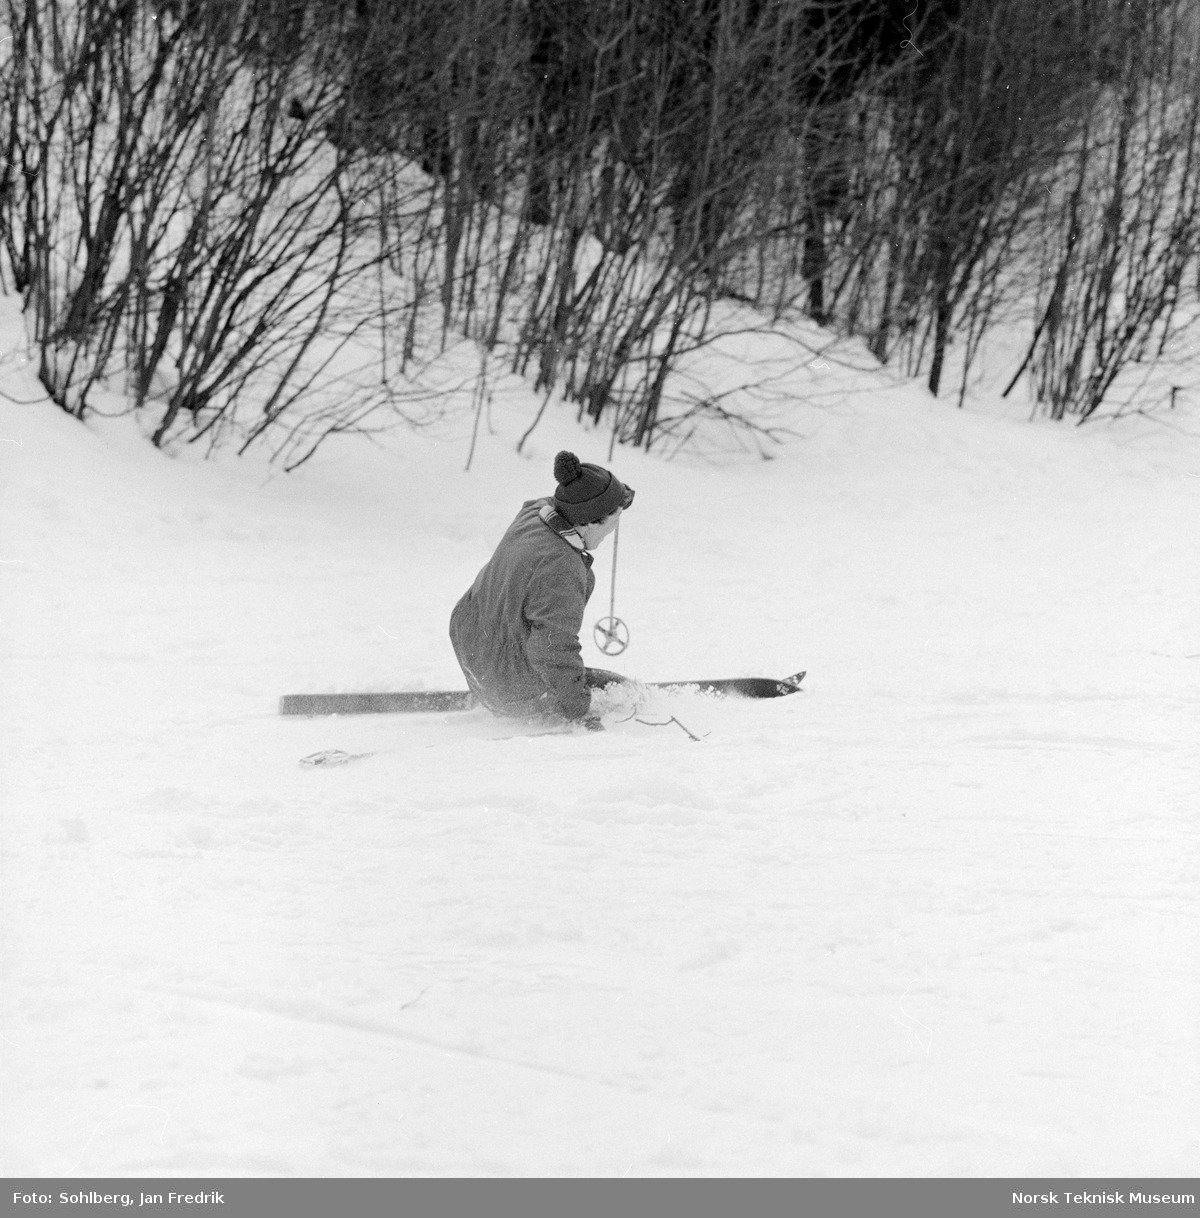 Skikurs for husmødre vinteren 1963. En skiløper som faller. Fra en serie til en artikkel i Norsk Dameblad nr. 14, 1963, kalt "Trysil-Ola og tretten husmødre". v/ AKS.